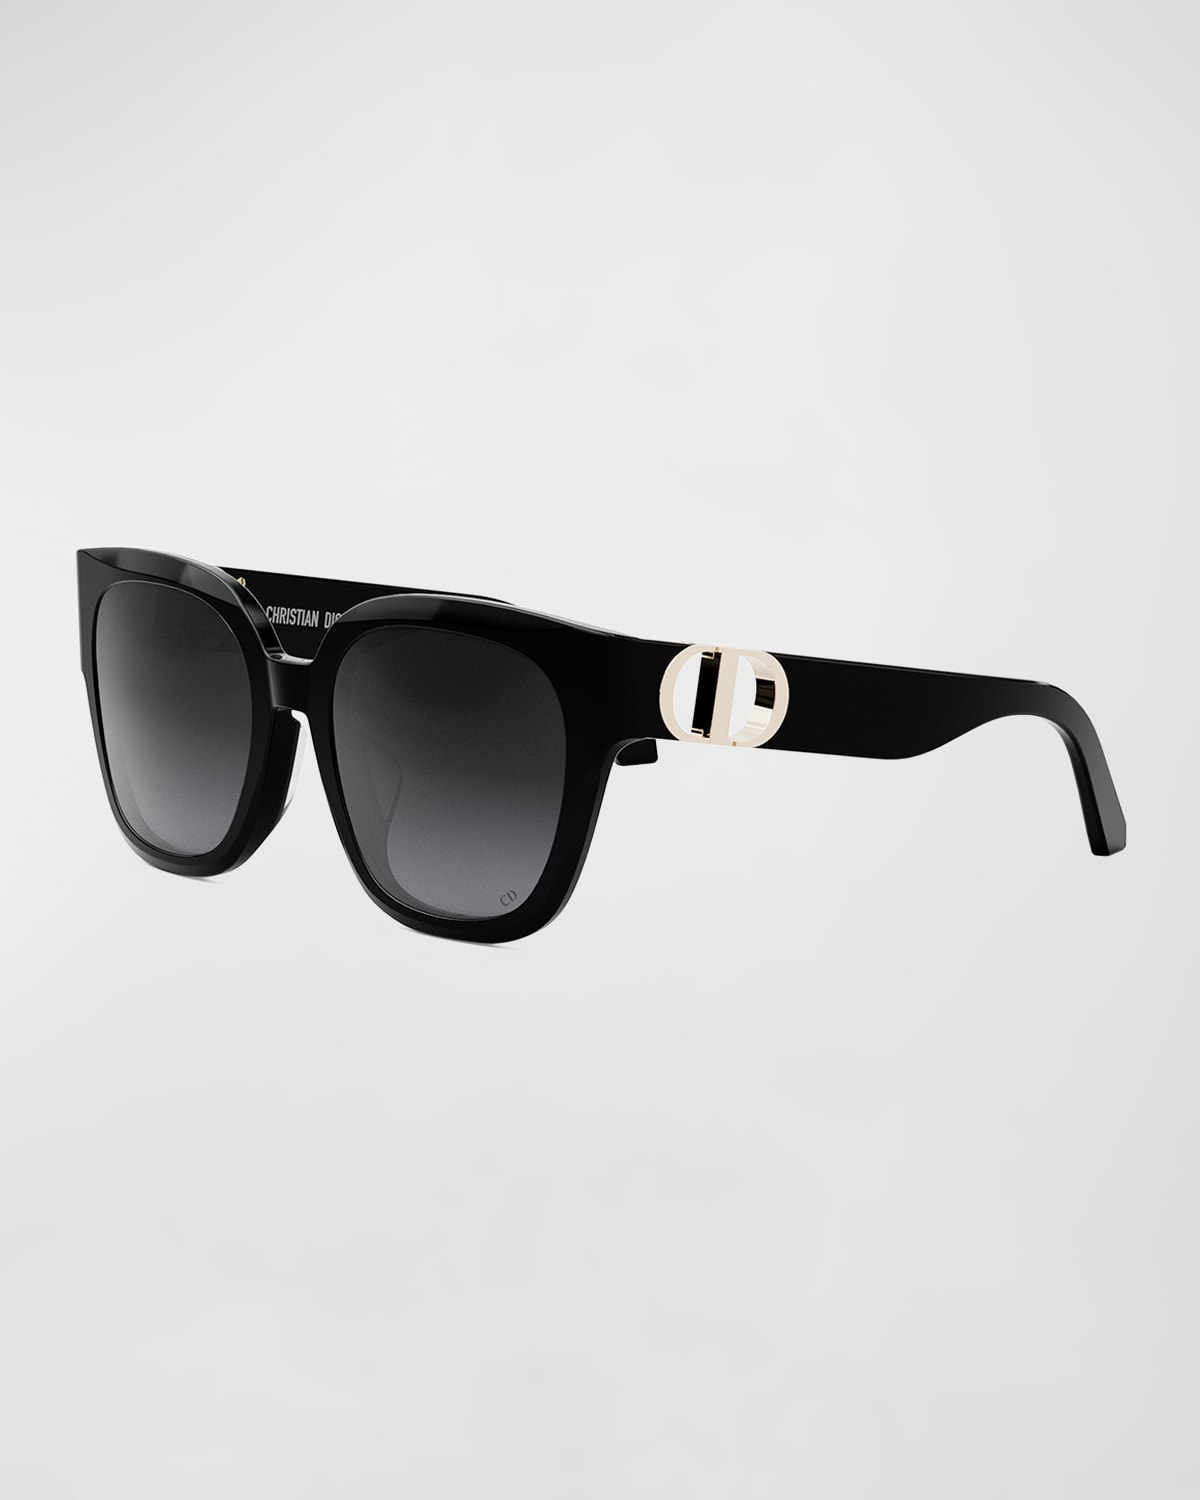 Dior 30montaignw S10f Sunglasses In Shiny Black Smoke